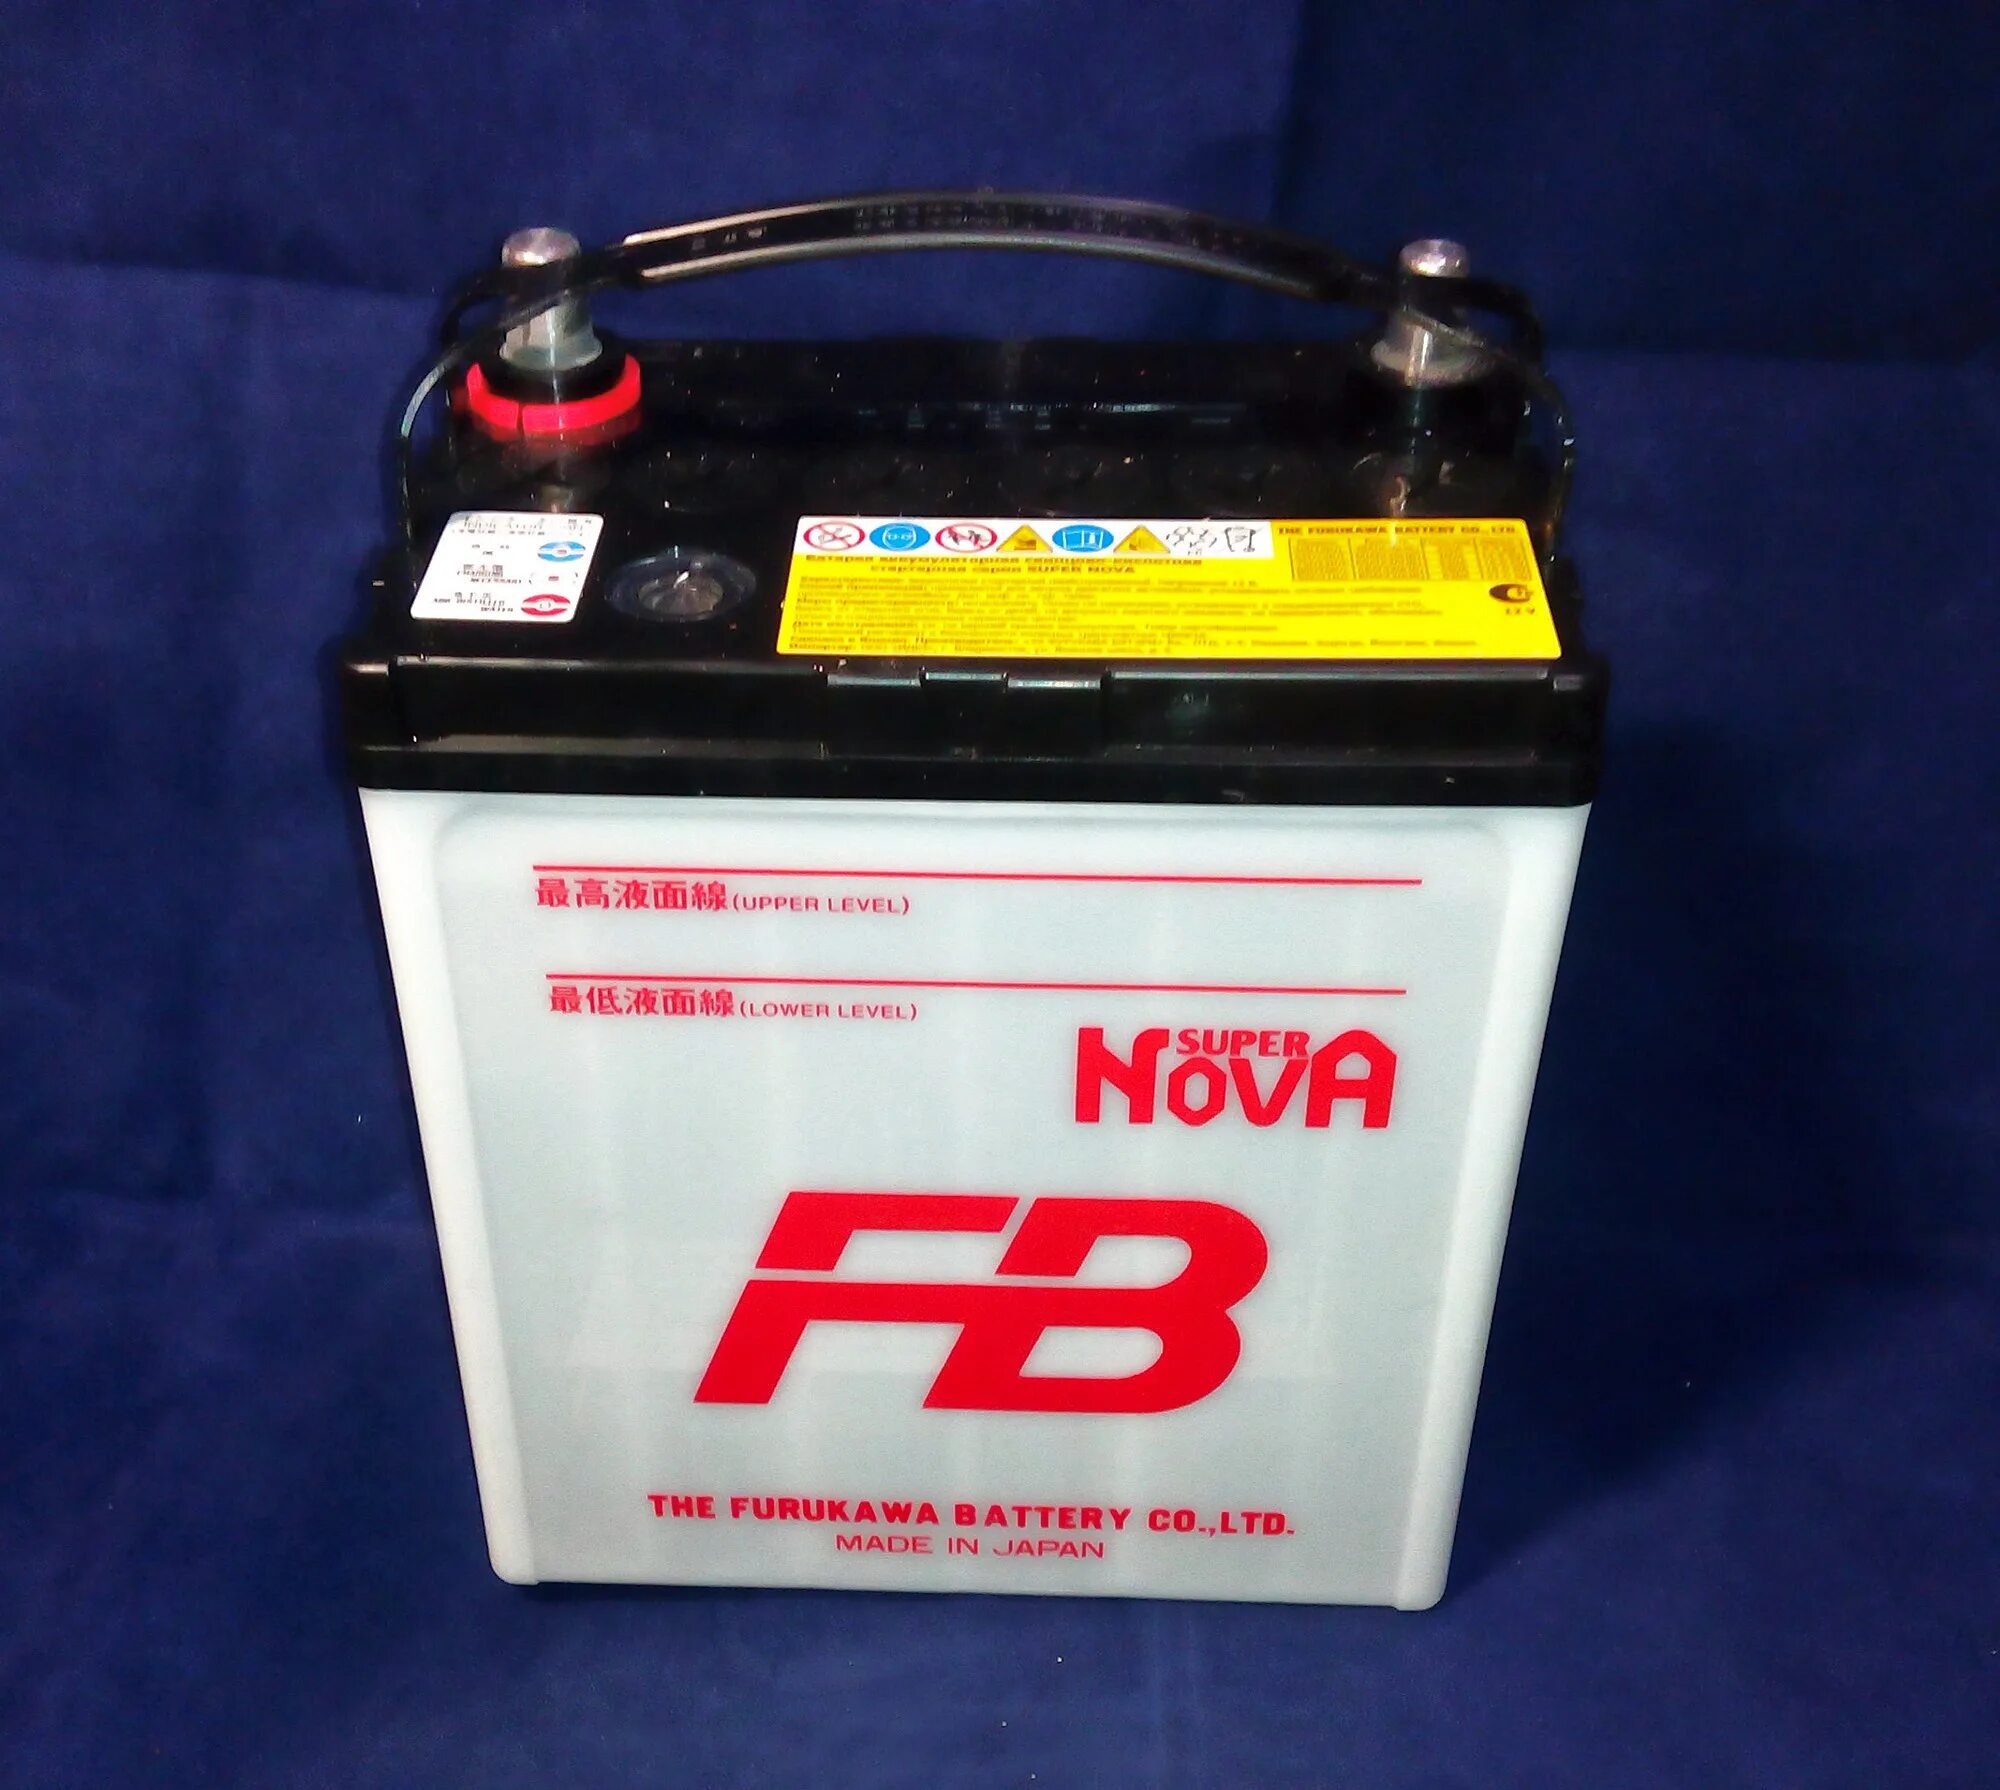 Furukawa battery fb. Furukawa Battery fb super Nova 40b19l. Furukawa аккумулятор fb super Nova. Аккумулятор Furukawa 40b19l. Furukawa battery40b19lбатарея аккумуляторная "fb super Nova", 12в 38а/ч.